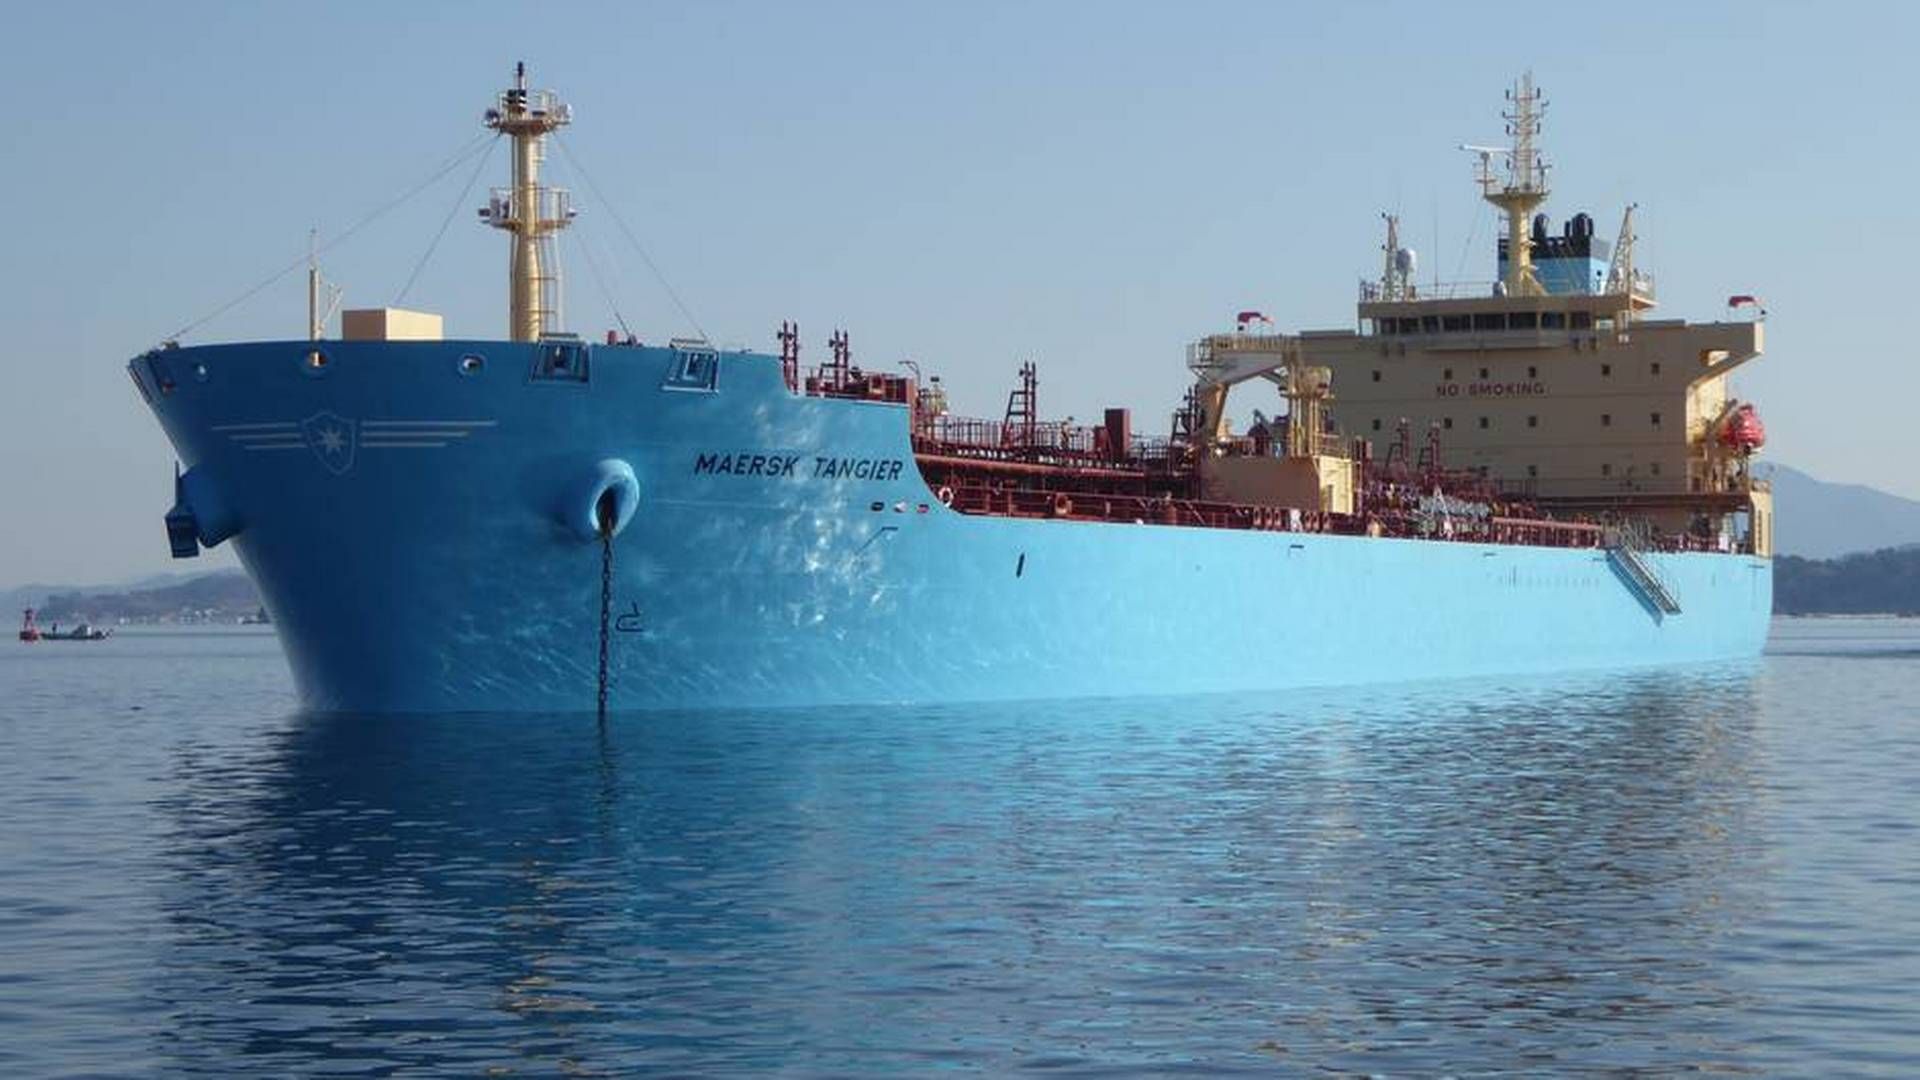 En forenkling af organisationen har kostet 14 chefer jobbet i Maersk Tankers. | Foto: Maersk Tankers